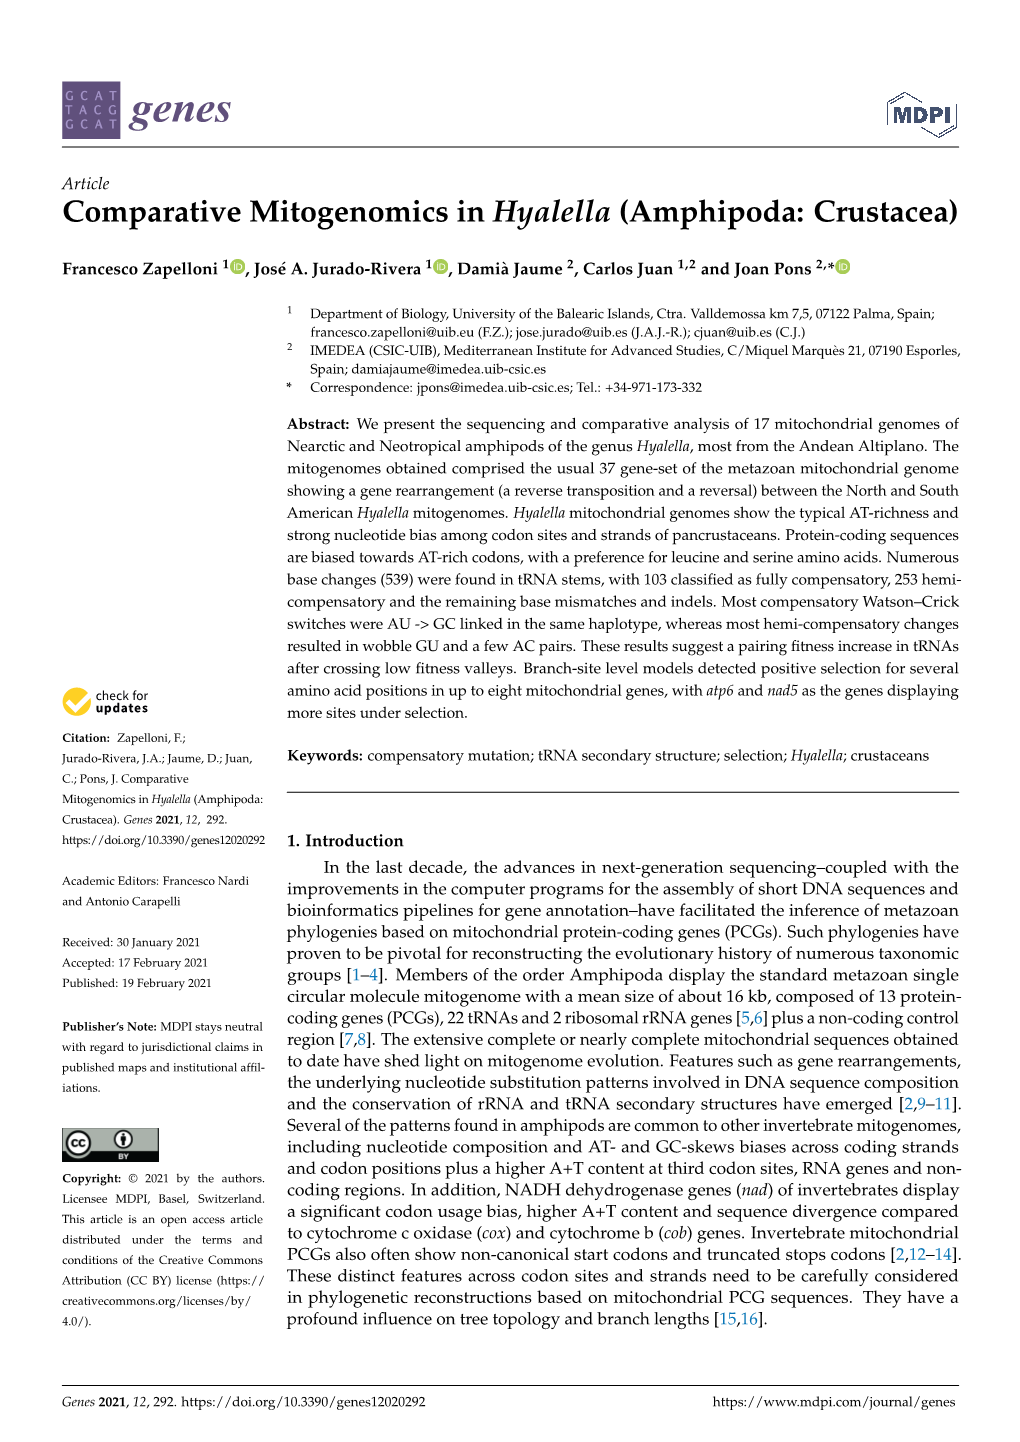 Comparative Mitogenomics in Hyalella (Amphipoda: Crustacea)